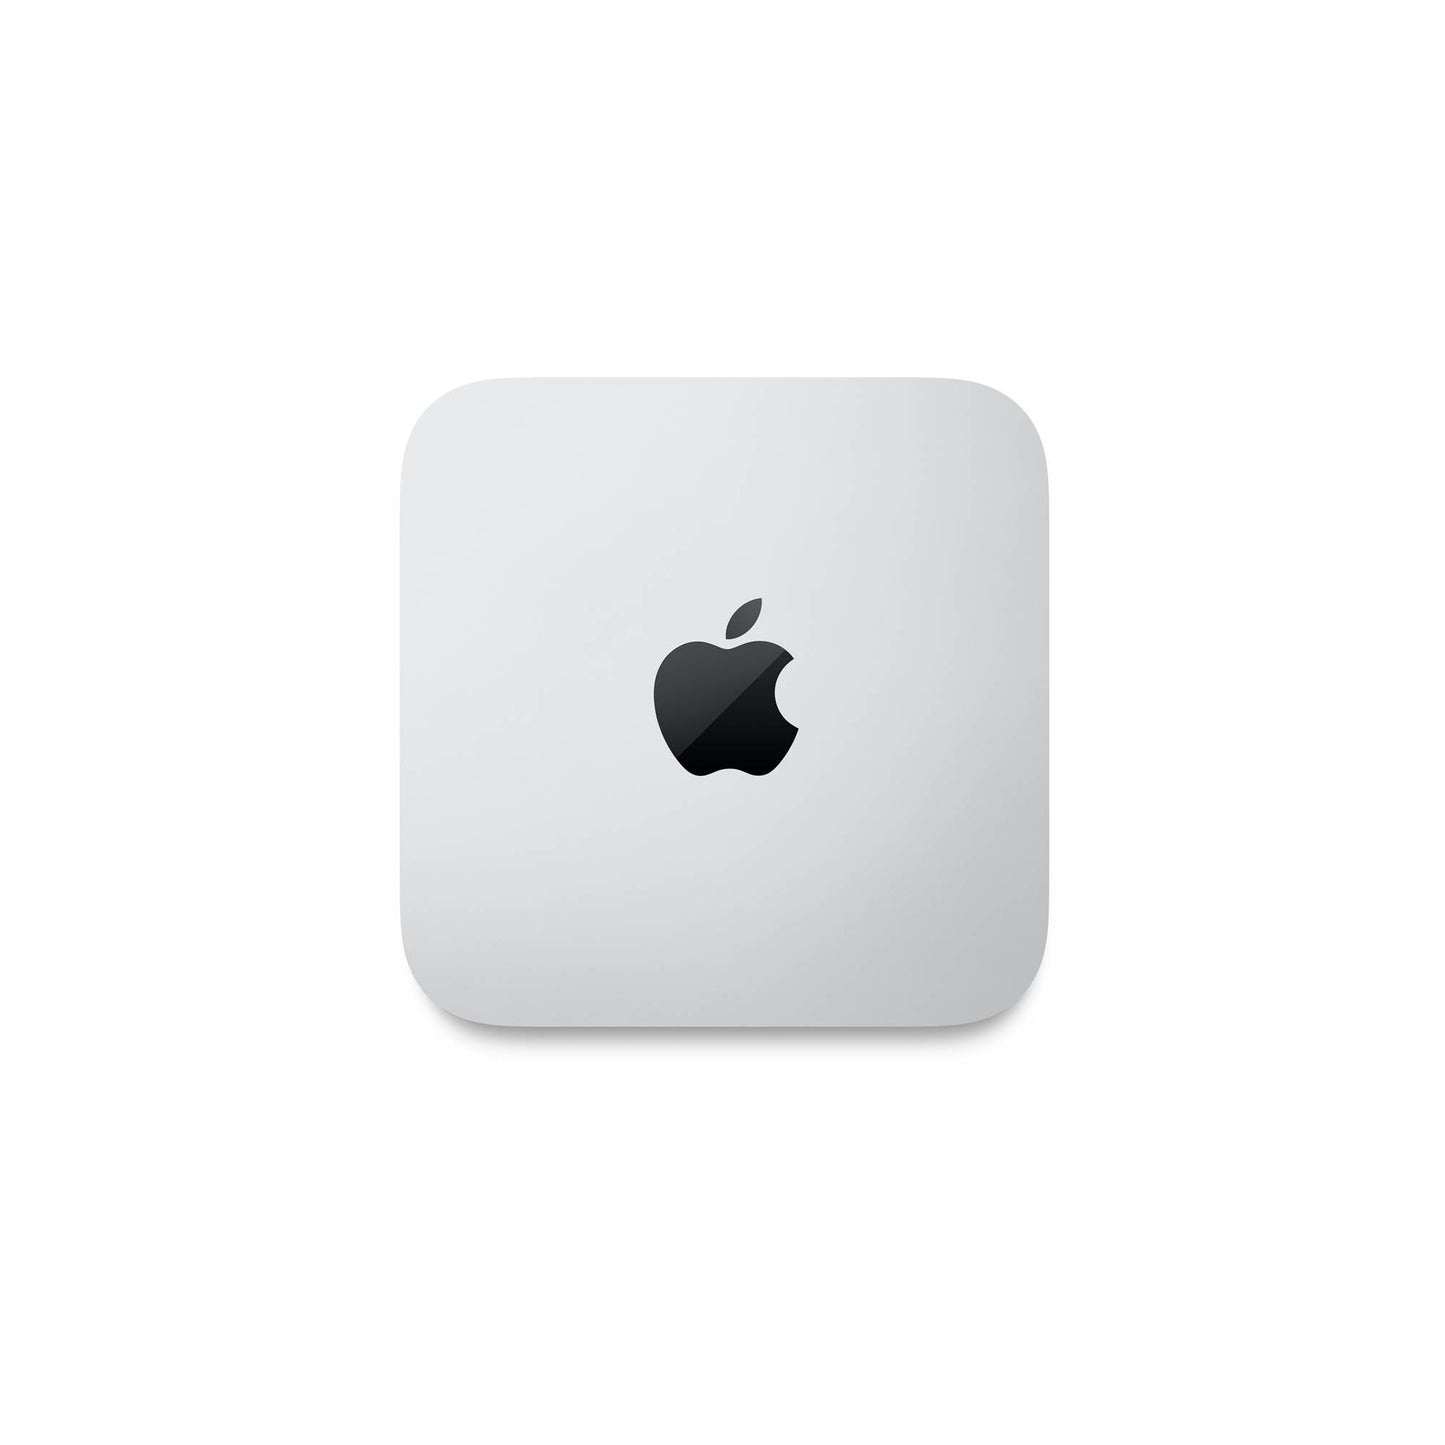 "Mac mini: Apple M2 chip with 8-core CPU and 10-core GPU, 512GB SSD"